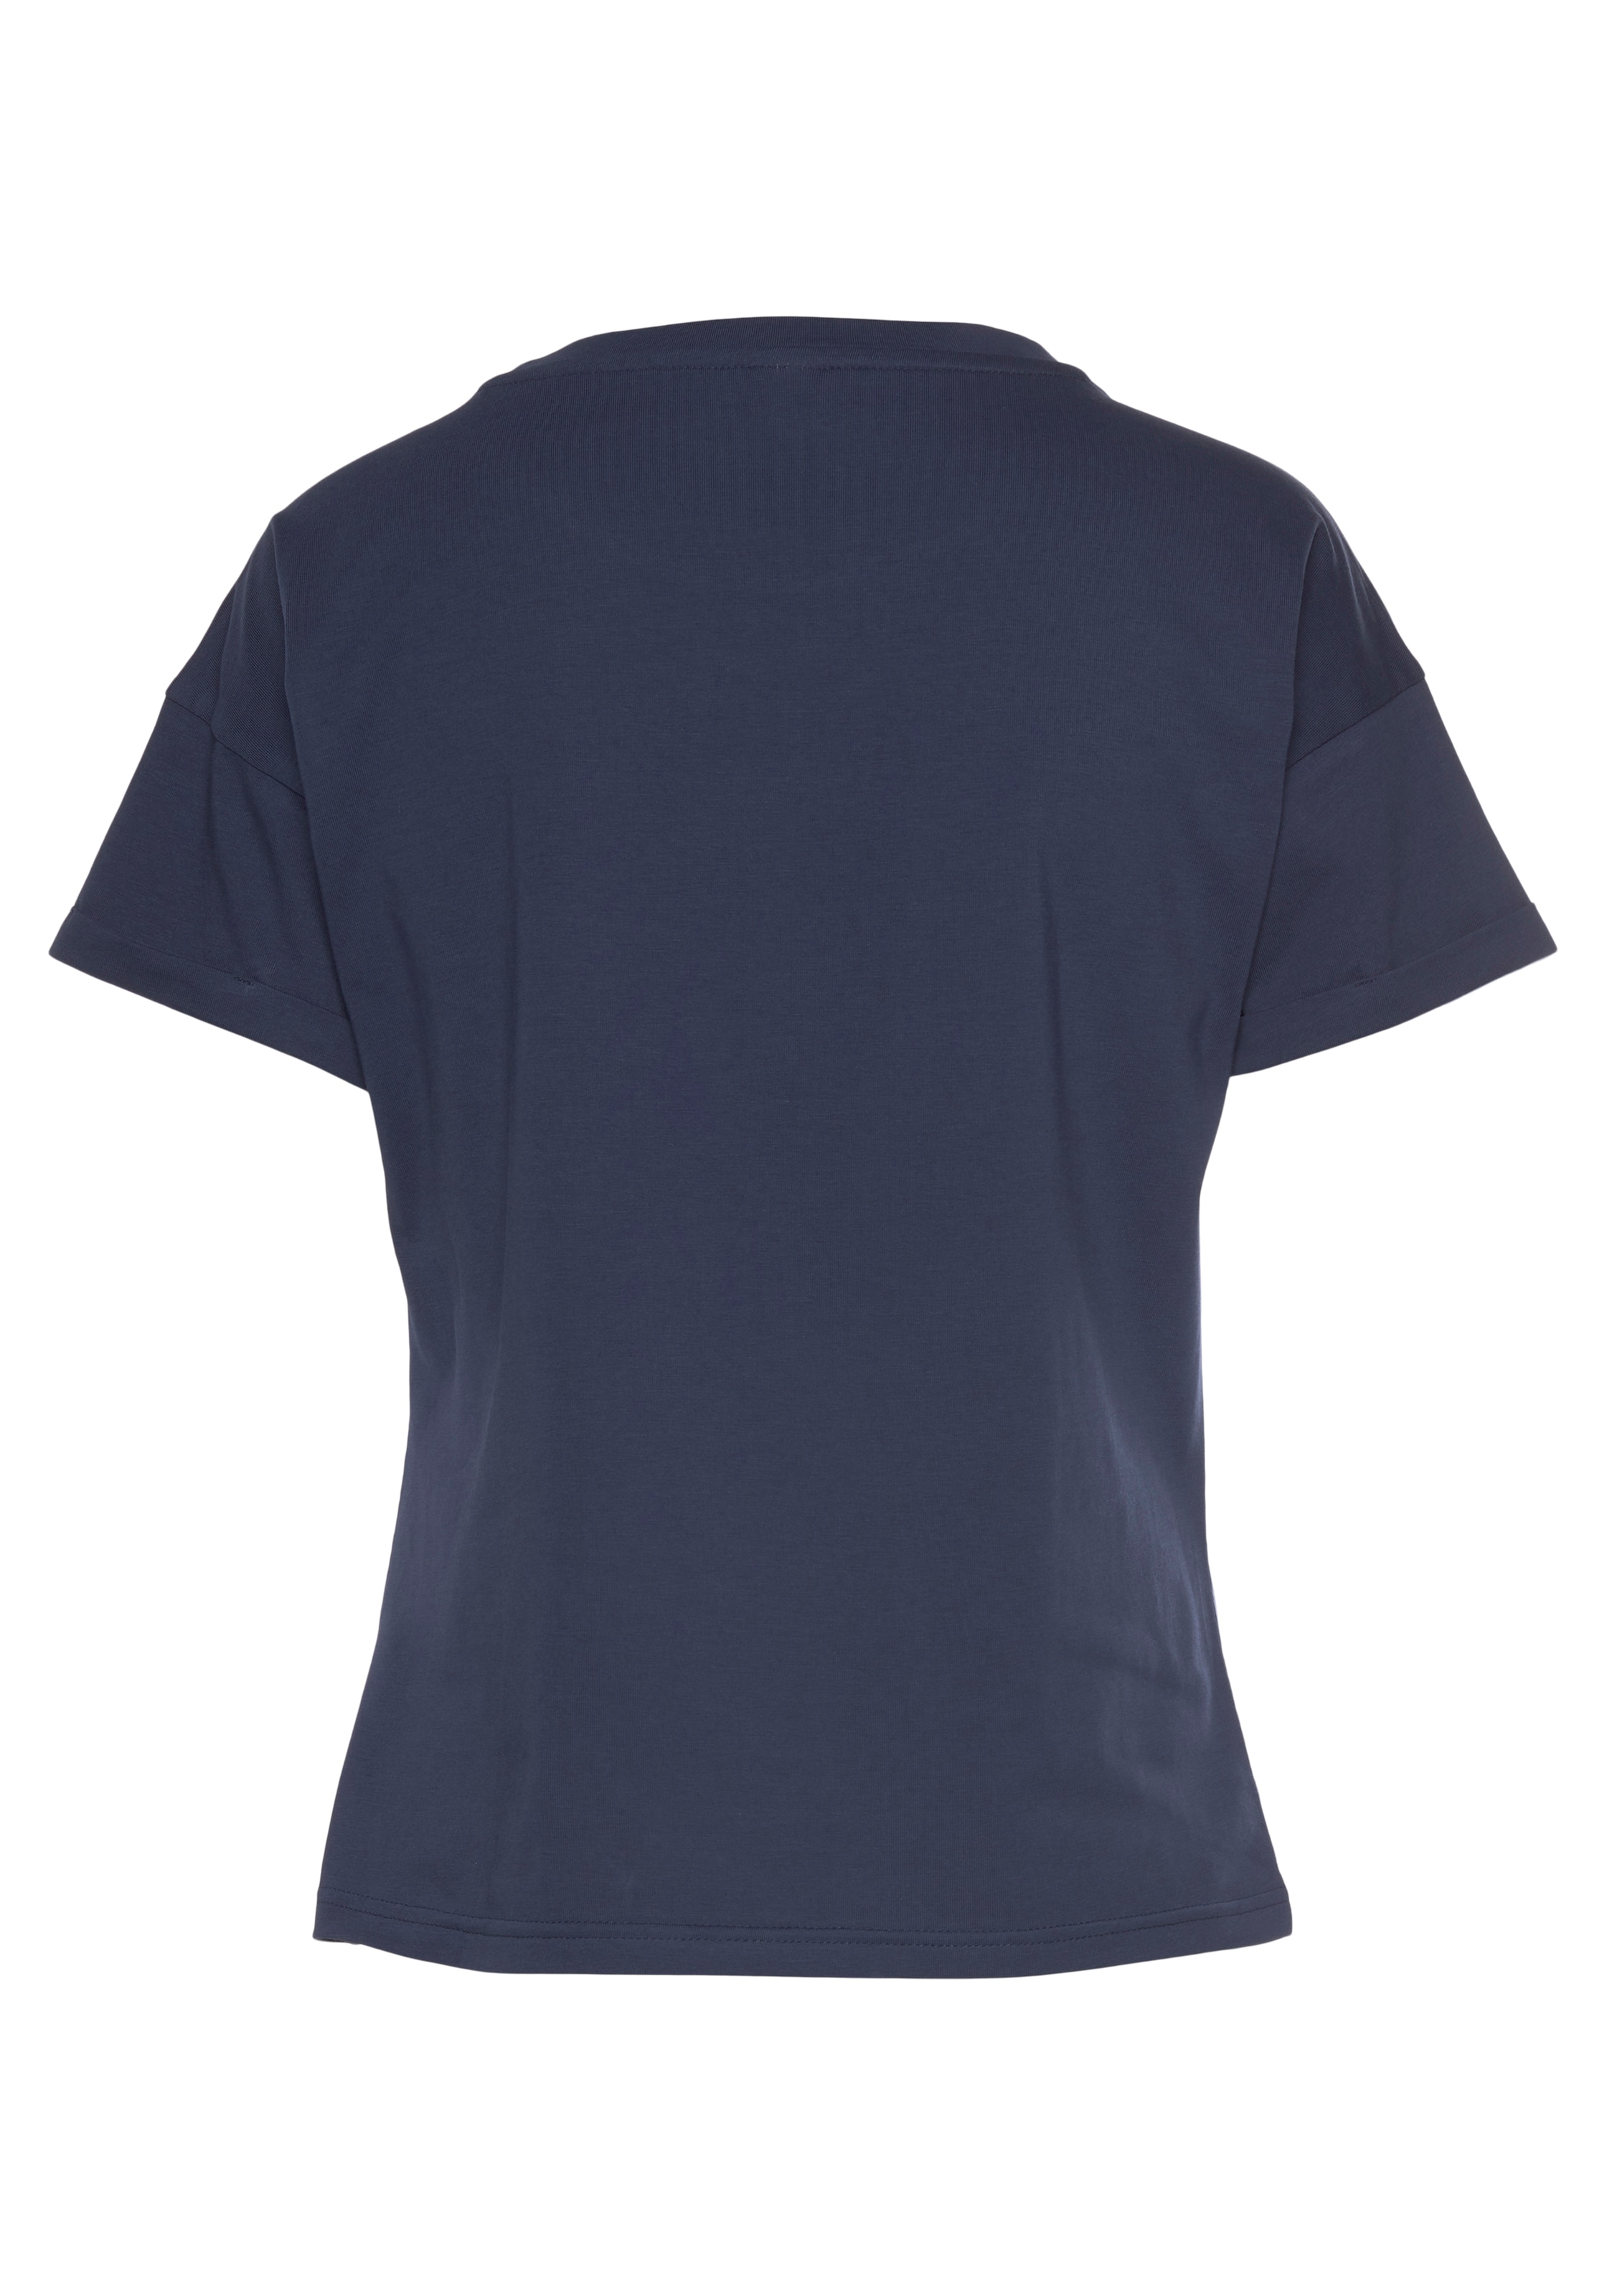 Stil Online im im T-Shirt, maritimen Shop H.I.S OTTO kaufen